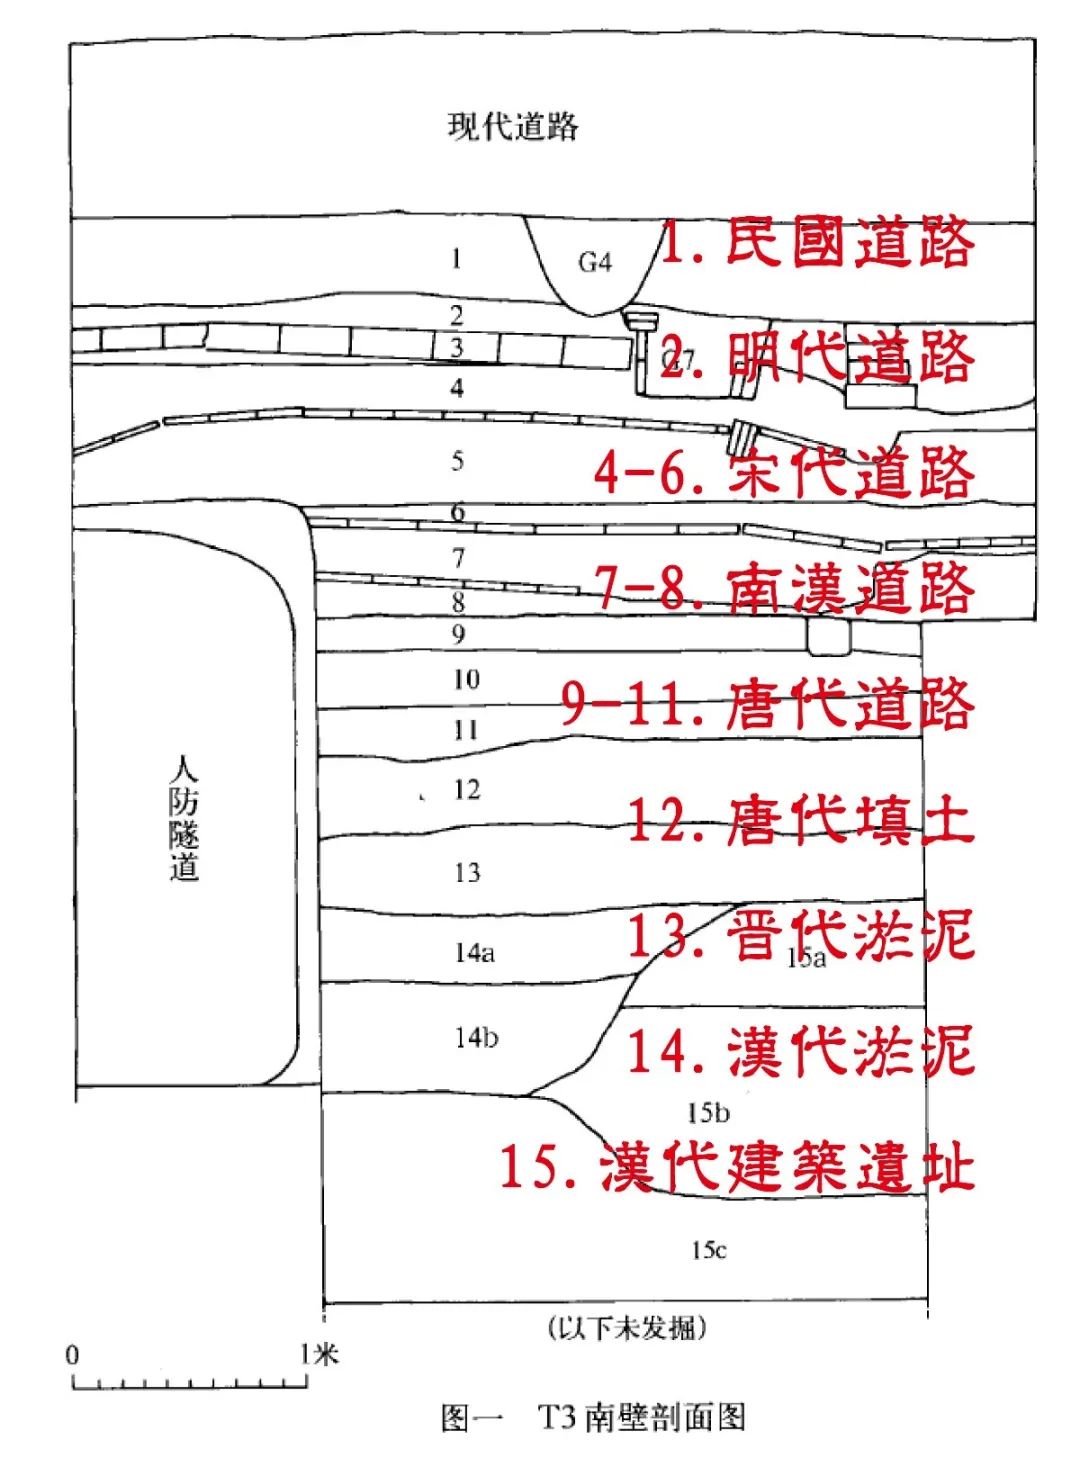 廣州北京路改造中的路面鋪裝不足之處